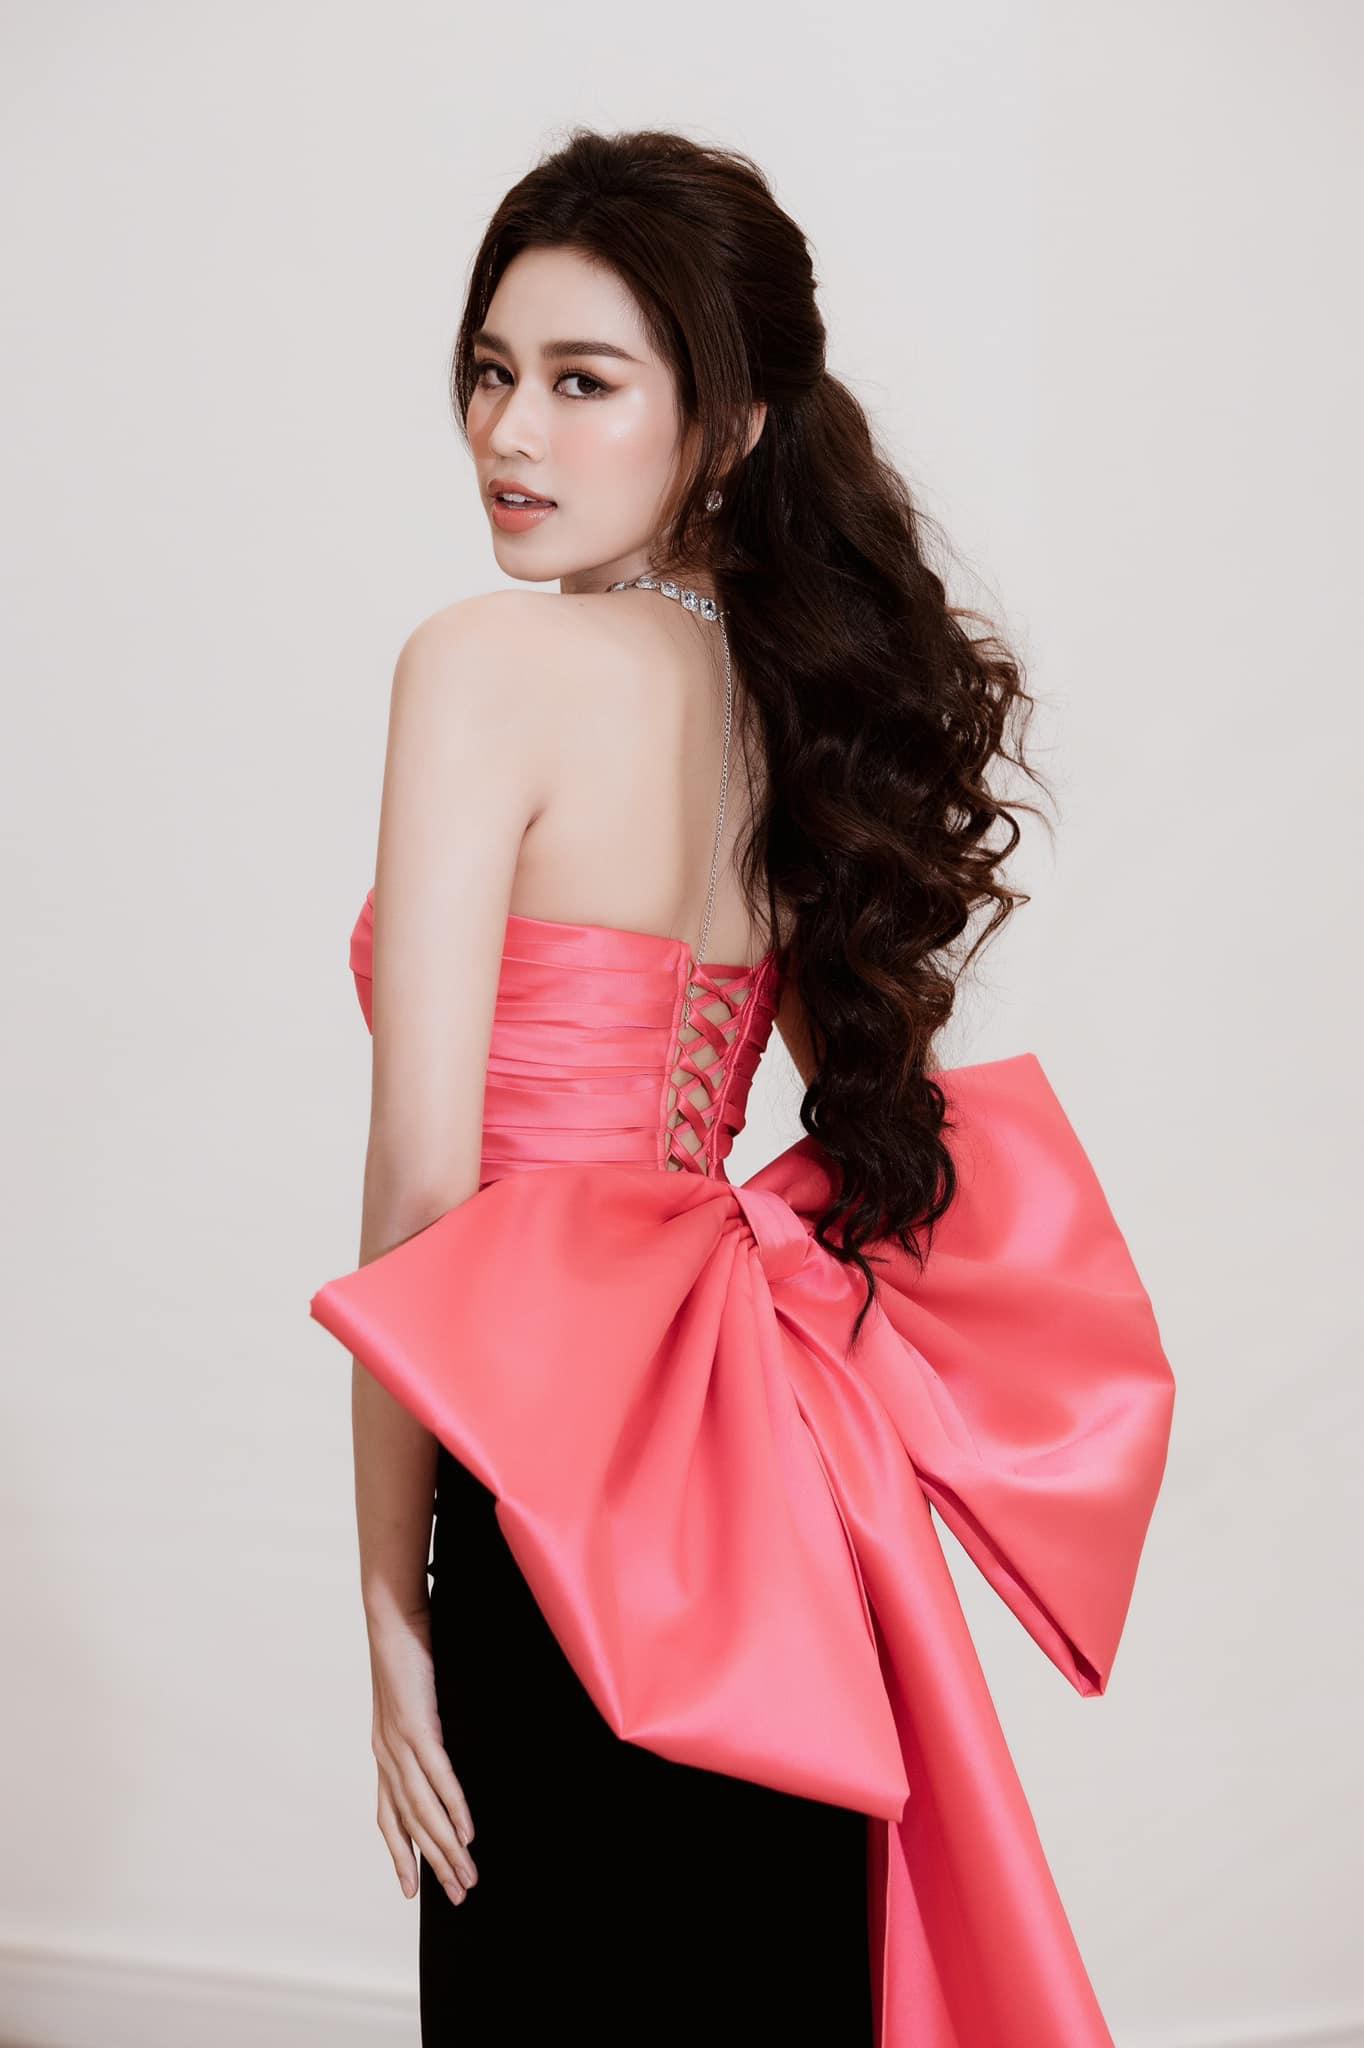 Hoa hậu Đỗ Thị Hà ‘biến hóa’ với tóc: Xoăn đuôi nhẹ vẫn là ‘chân ái’ - Ảnh 10.